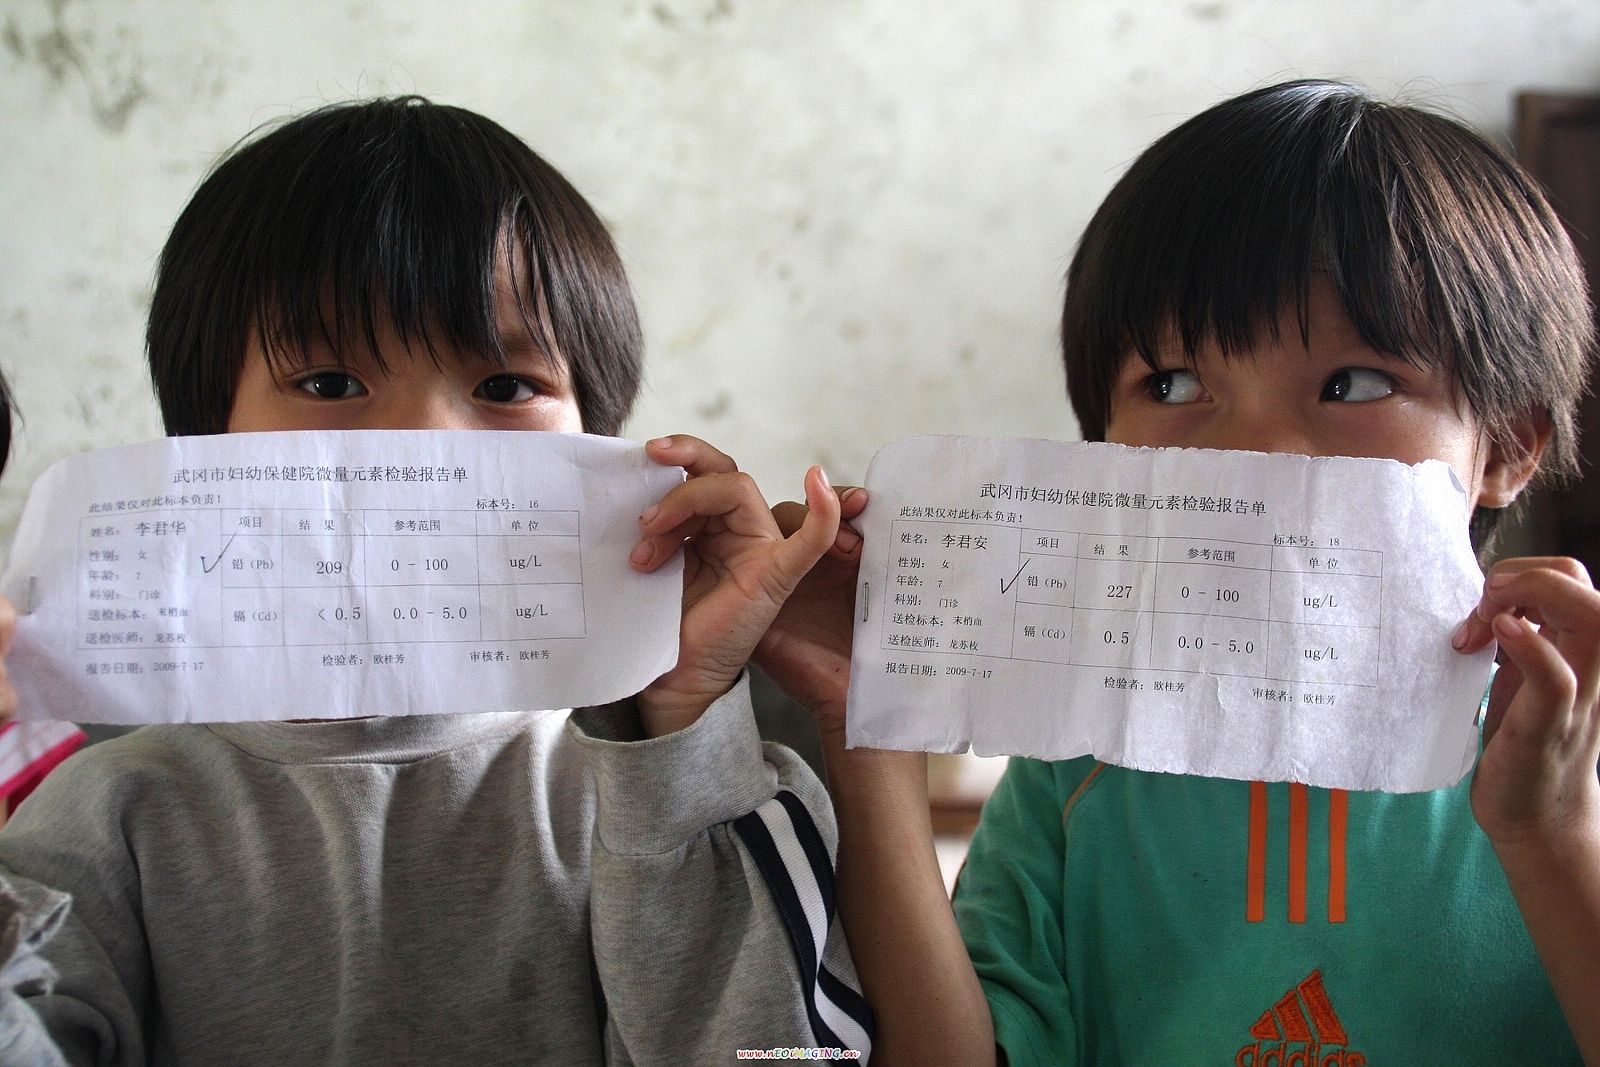 Dos niños muestran el test médico que indica los niveles de plomo